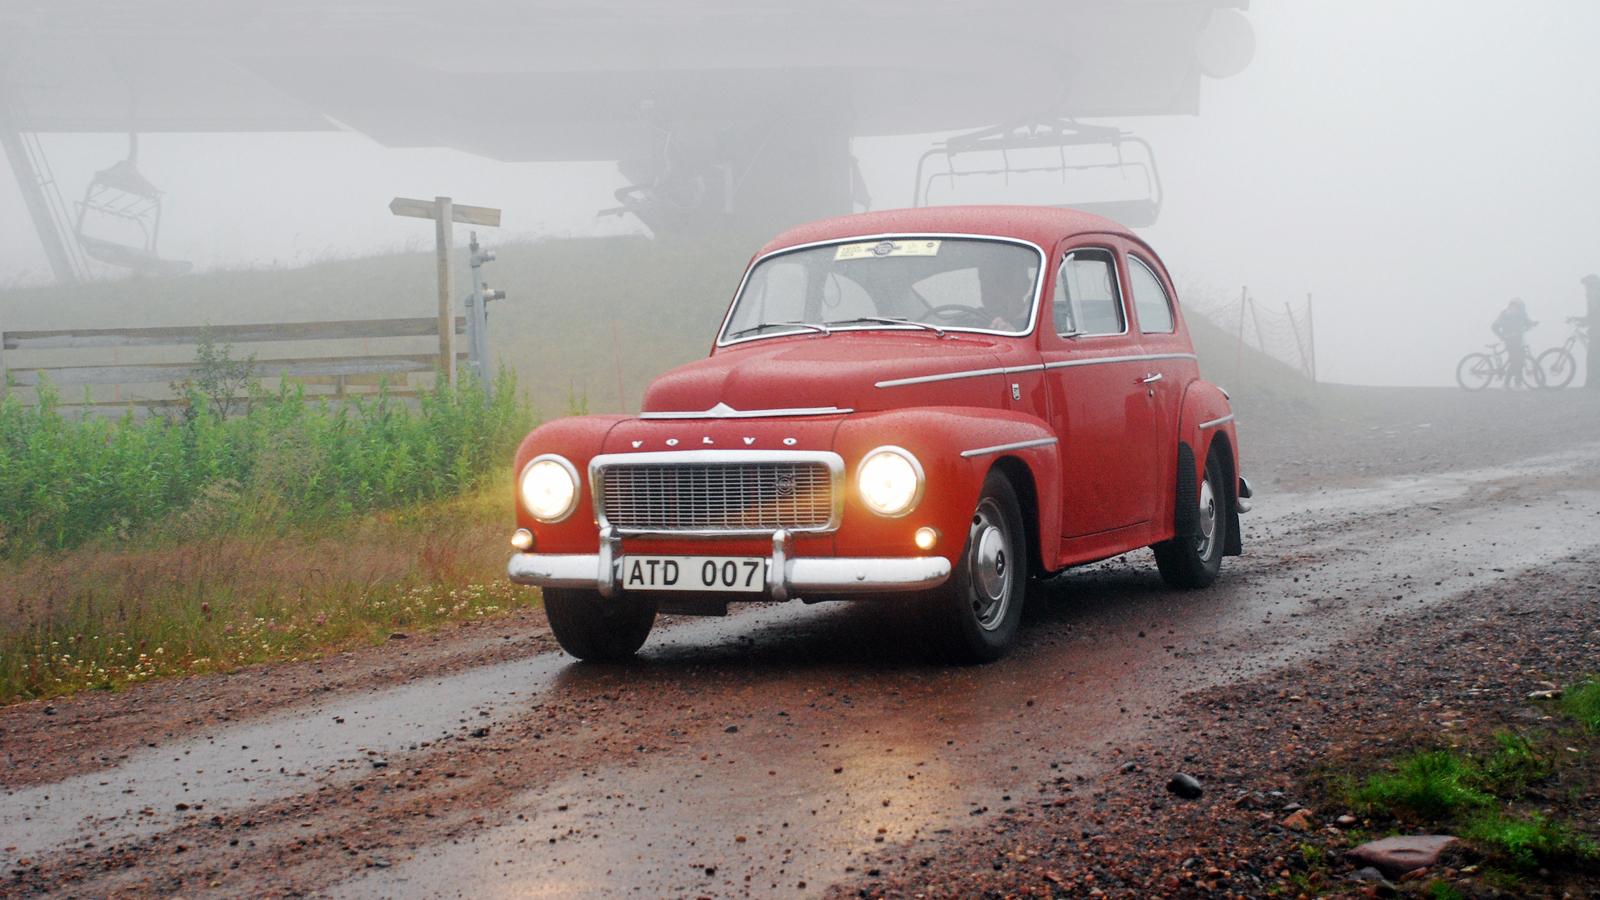 Att vädret inte är det bästa skrämmer inte Volvo Museum – den unika PV:n är ju trots allt en bastant Volvo, tyvärr ser vi inget av utsikten för dimman är mycket kraftig.